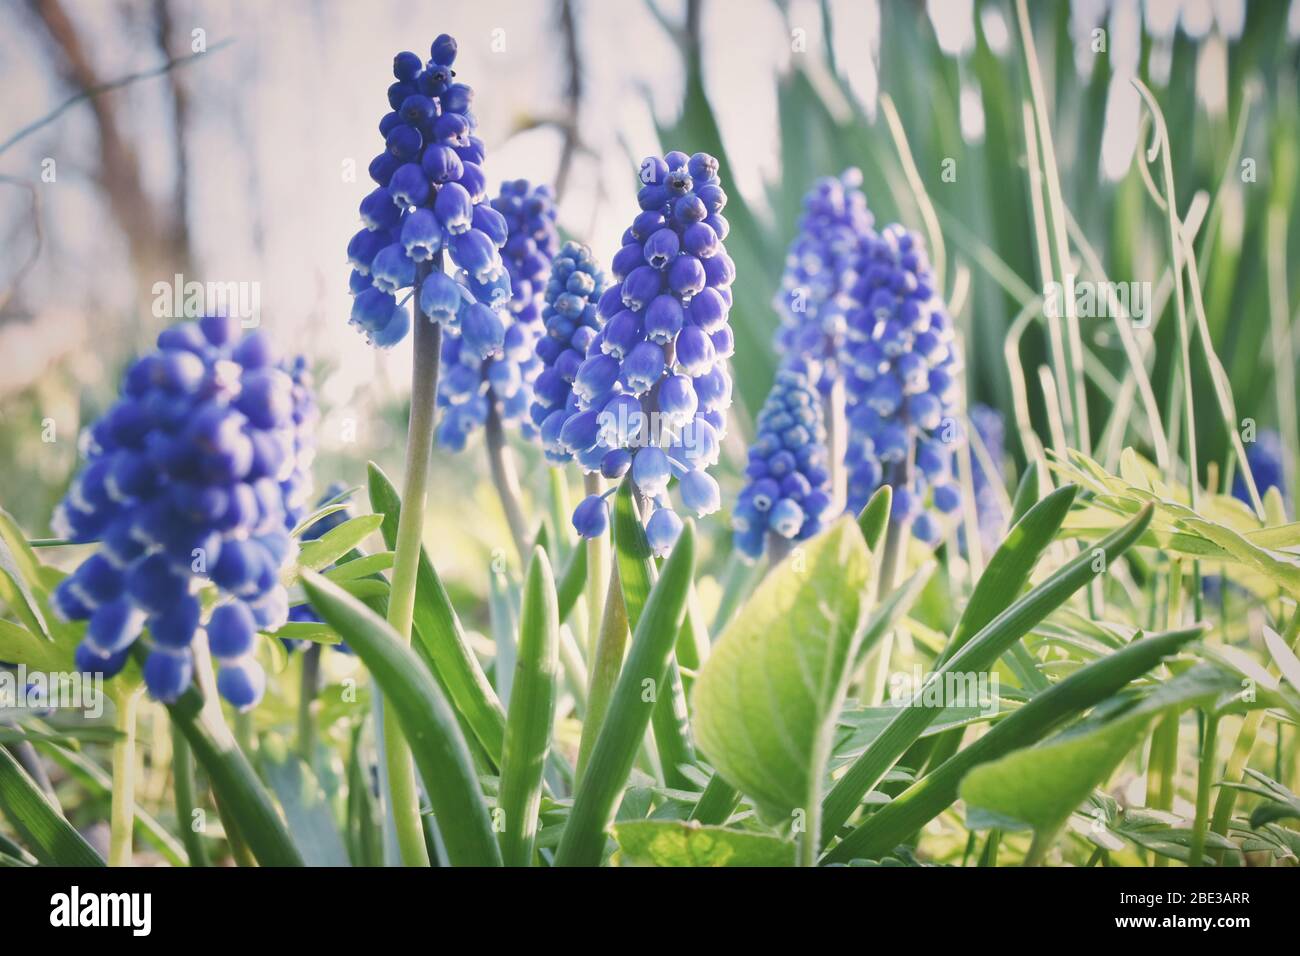 Blaue Traube Hyazinthe Muscari armeniacum blühende Blumen wachsen auf einer  Wiese in einem Wald. Frühe Frühjahrssaison blaue Blume, mehrjährige bulbous  Pflanzen Stockfotografie - Alamy